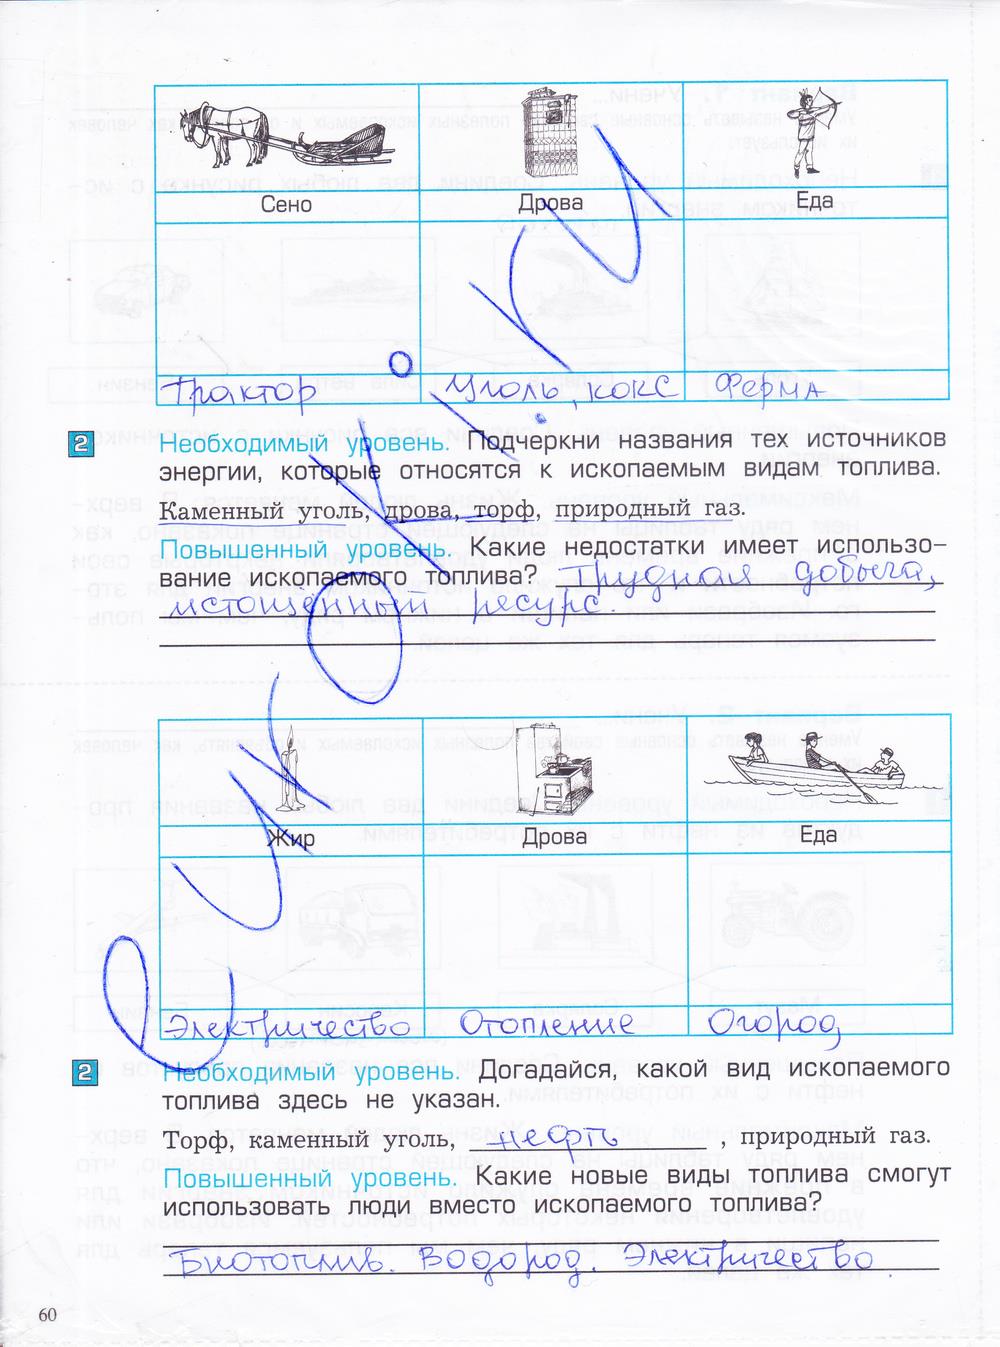 гдз 4 класс проверочные и контрольные работы часть 1 страница 60 окружающий мир Вахрушев, Бурский, Родыгина